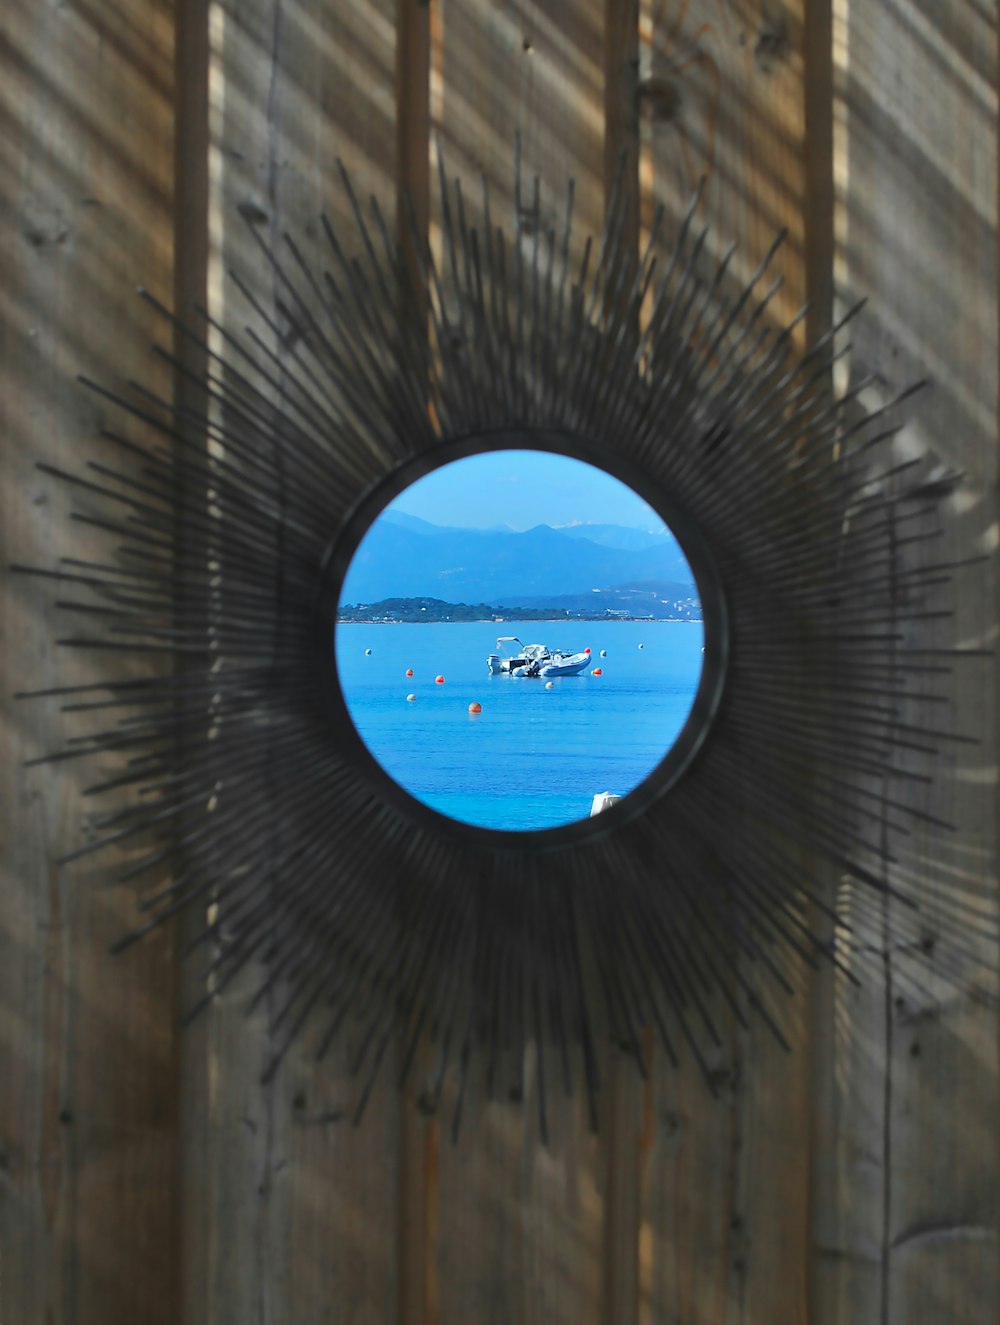 a view of a body of water through a circular mirror